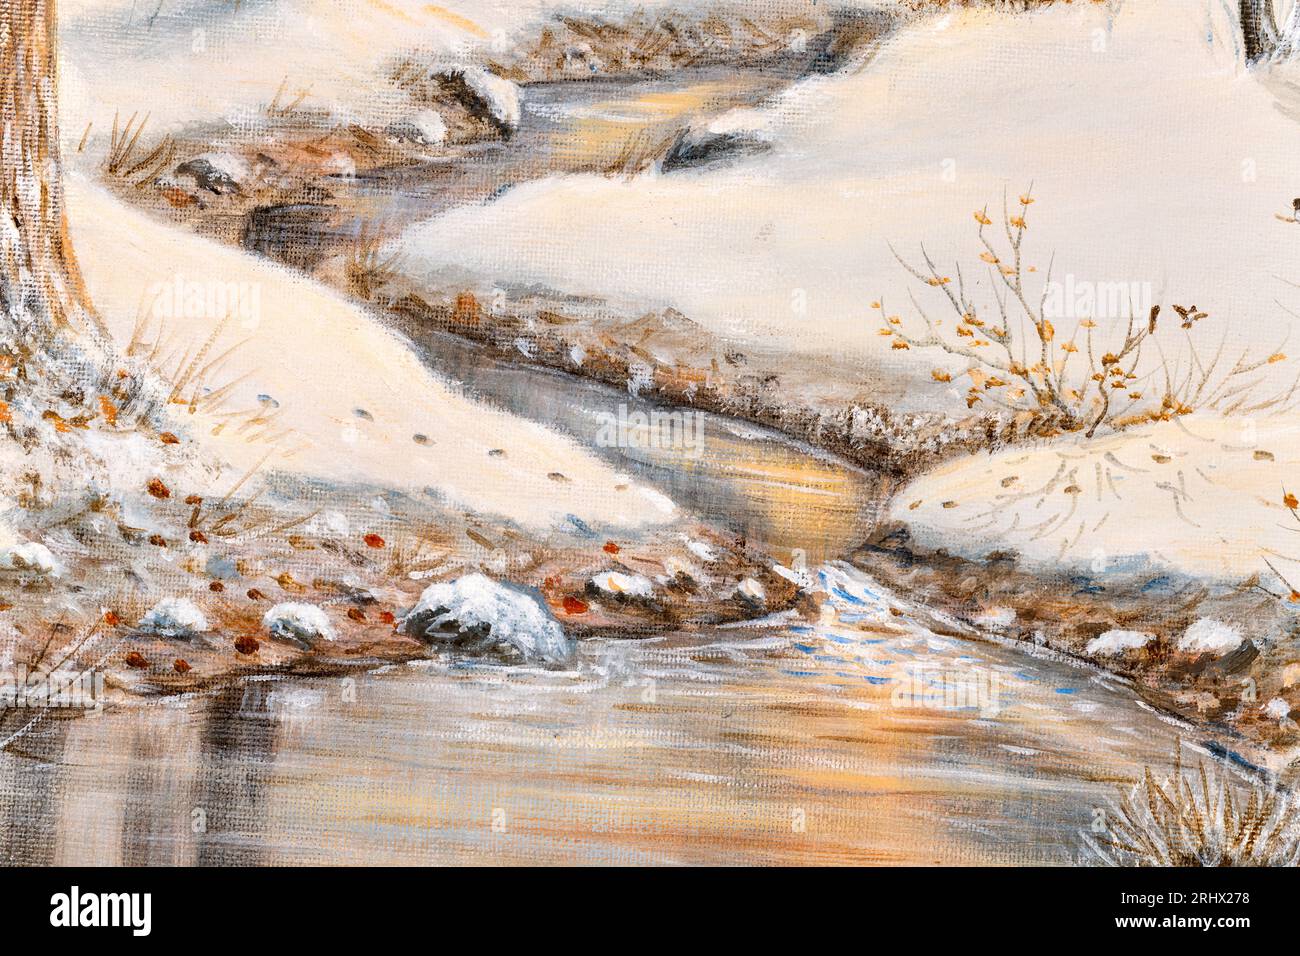 Détail d'un paysage hivernal à l'huile avec un ruisseau coulant à travers une forêt avec des cabanes en arrière-plan. Concept des fêtes de Noël. Banque D'Images